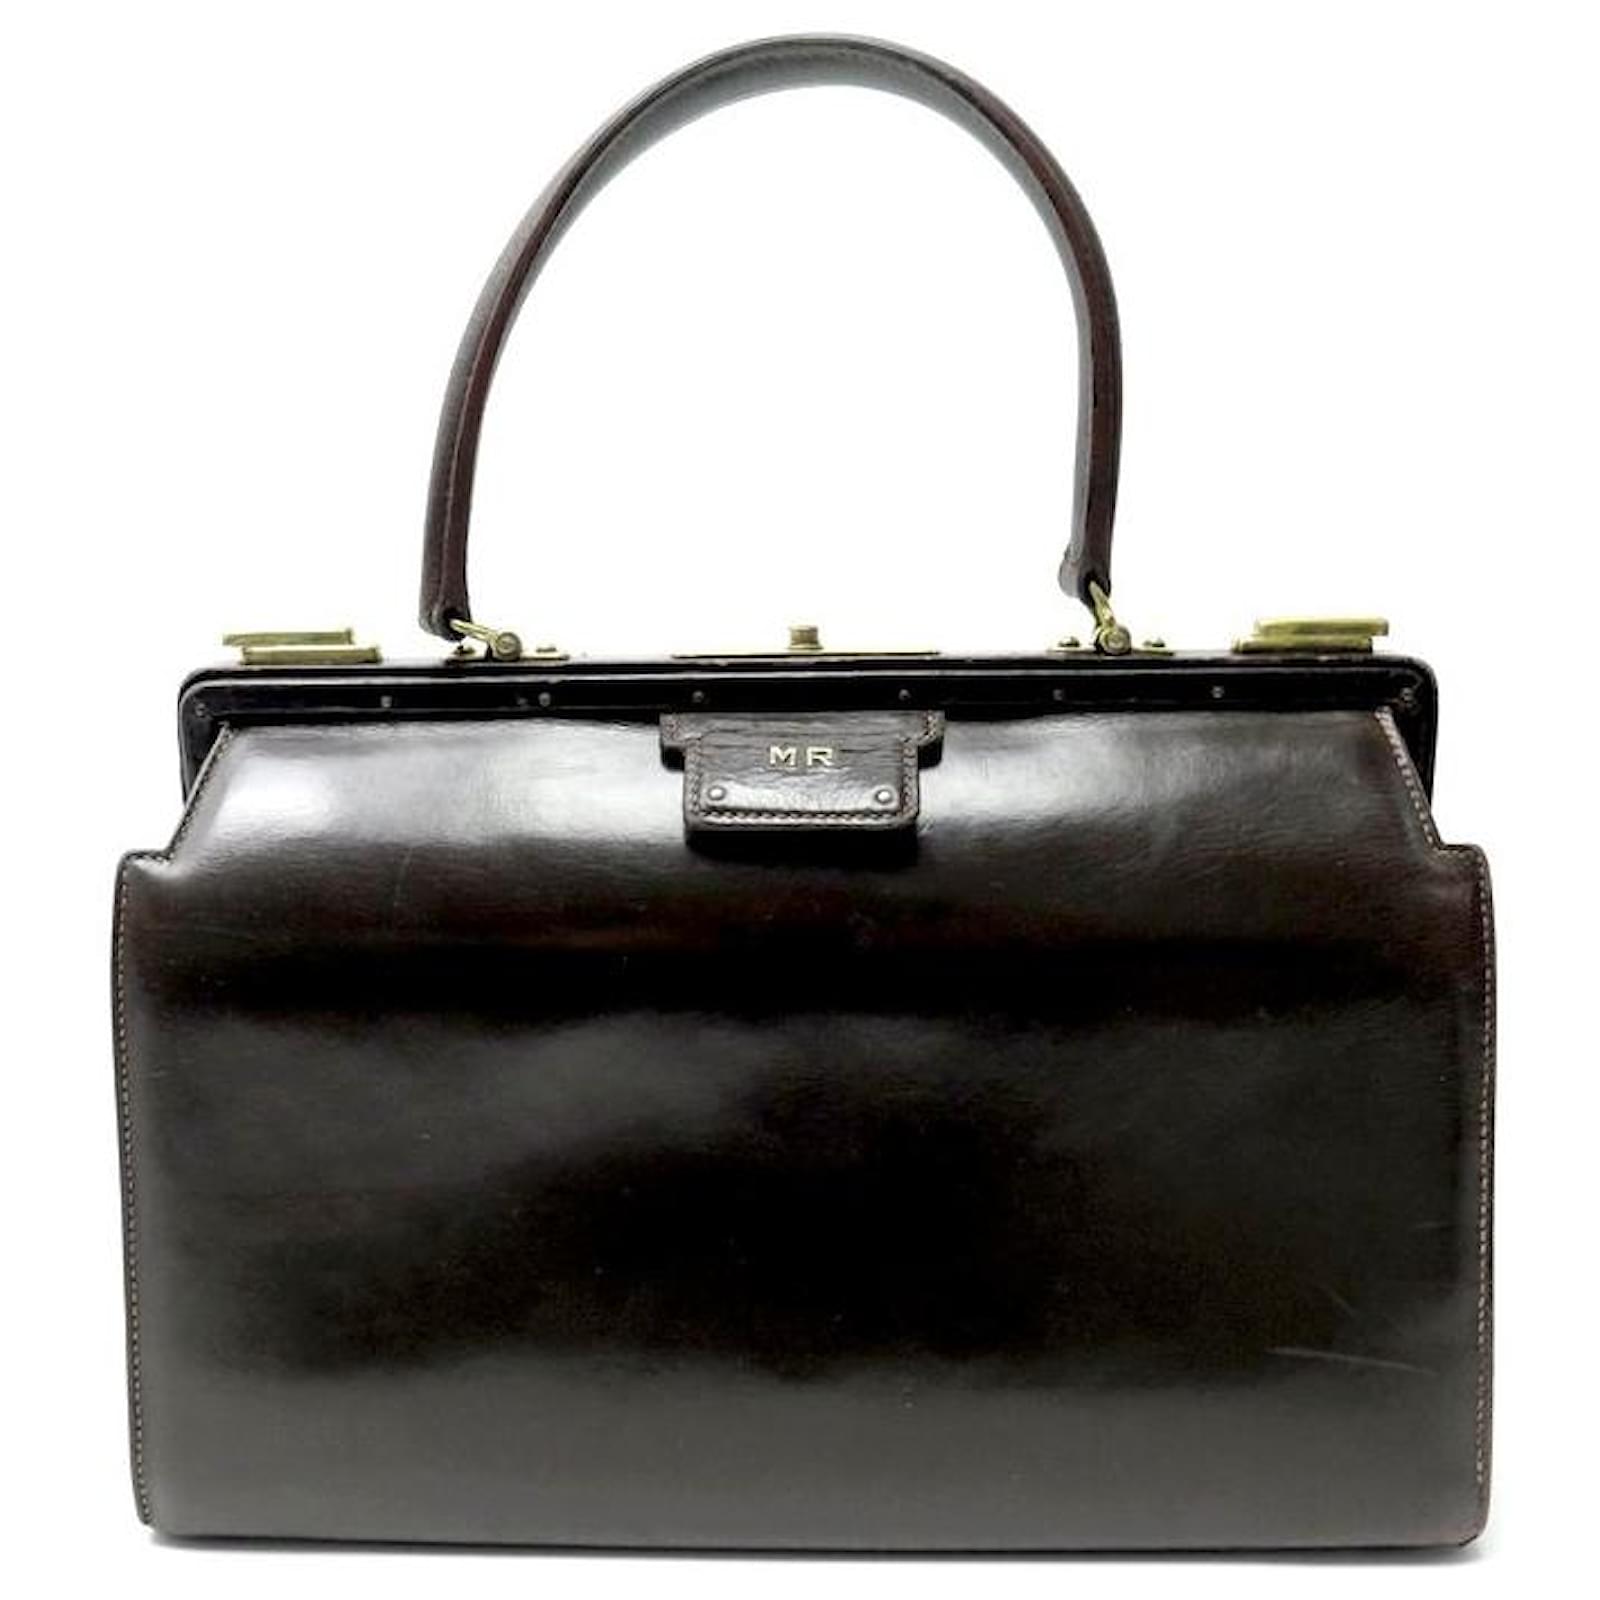 Hermes 1950s Green Box Leather 404 Retro Doctor Bag Handbag Mallette Mint!